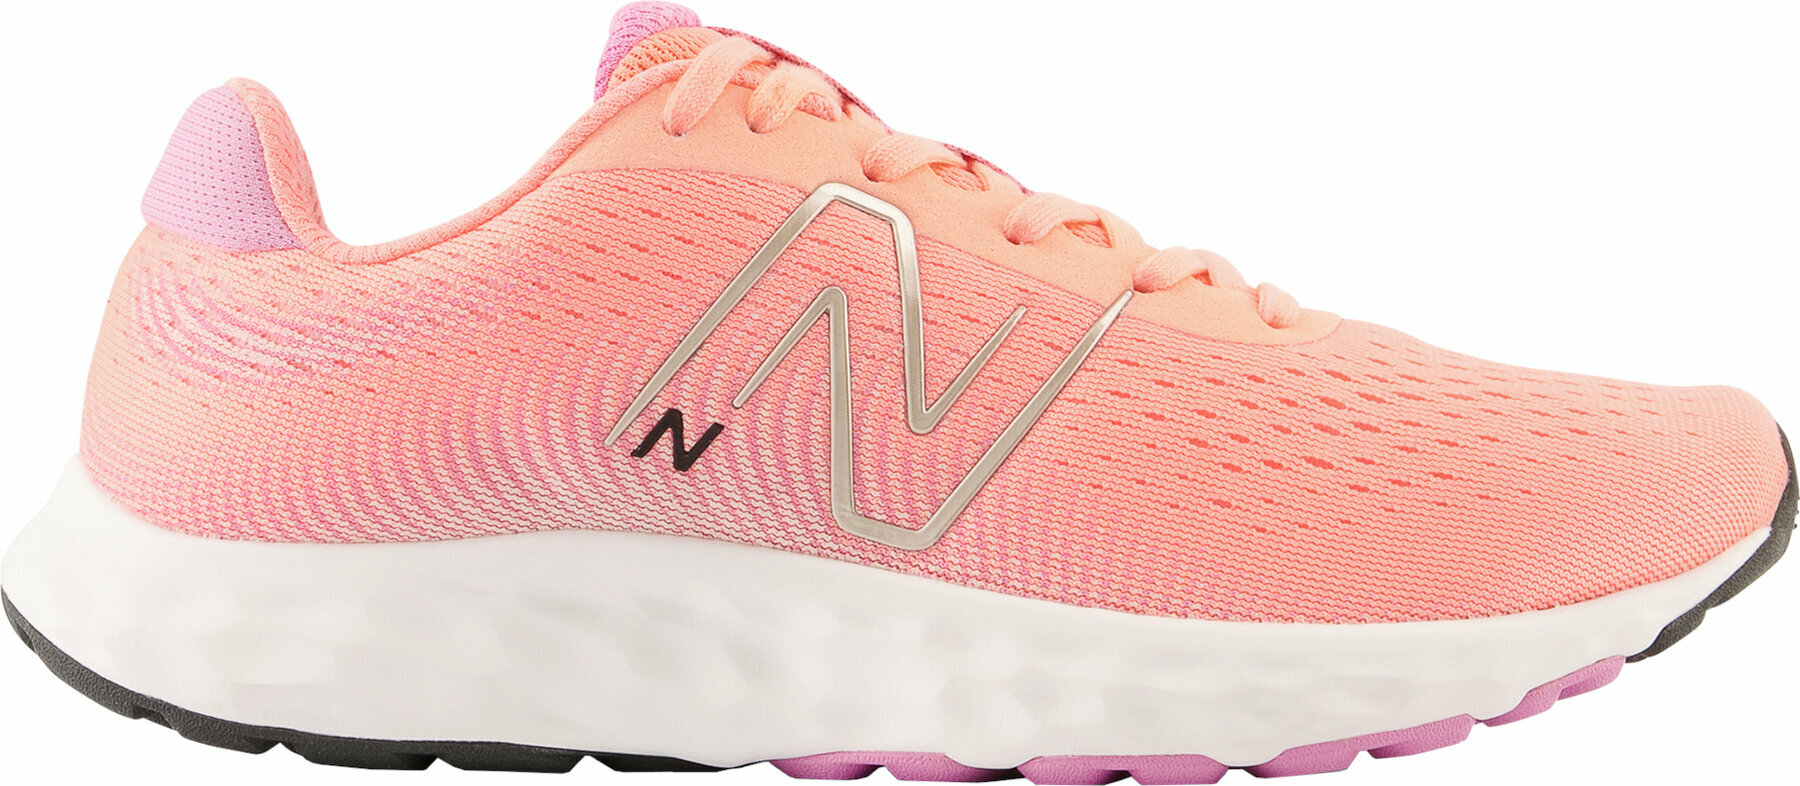 Buty do biegania po asfalcie
 New Balance Womens W520 Pink 40 Buty do biegania po asfalcie